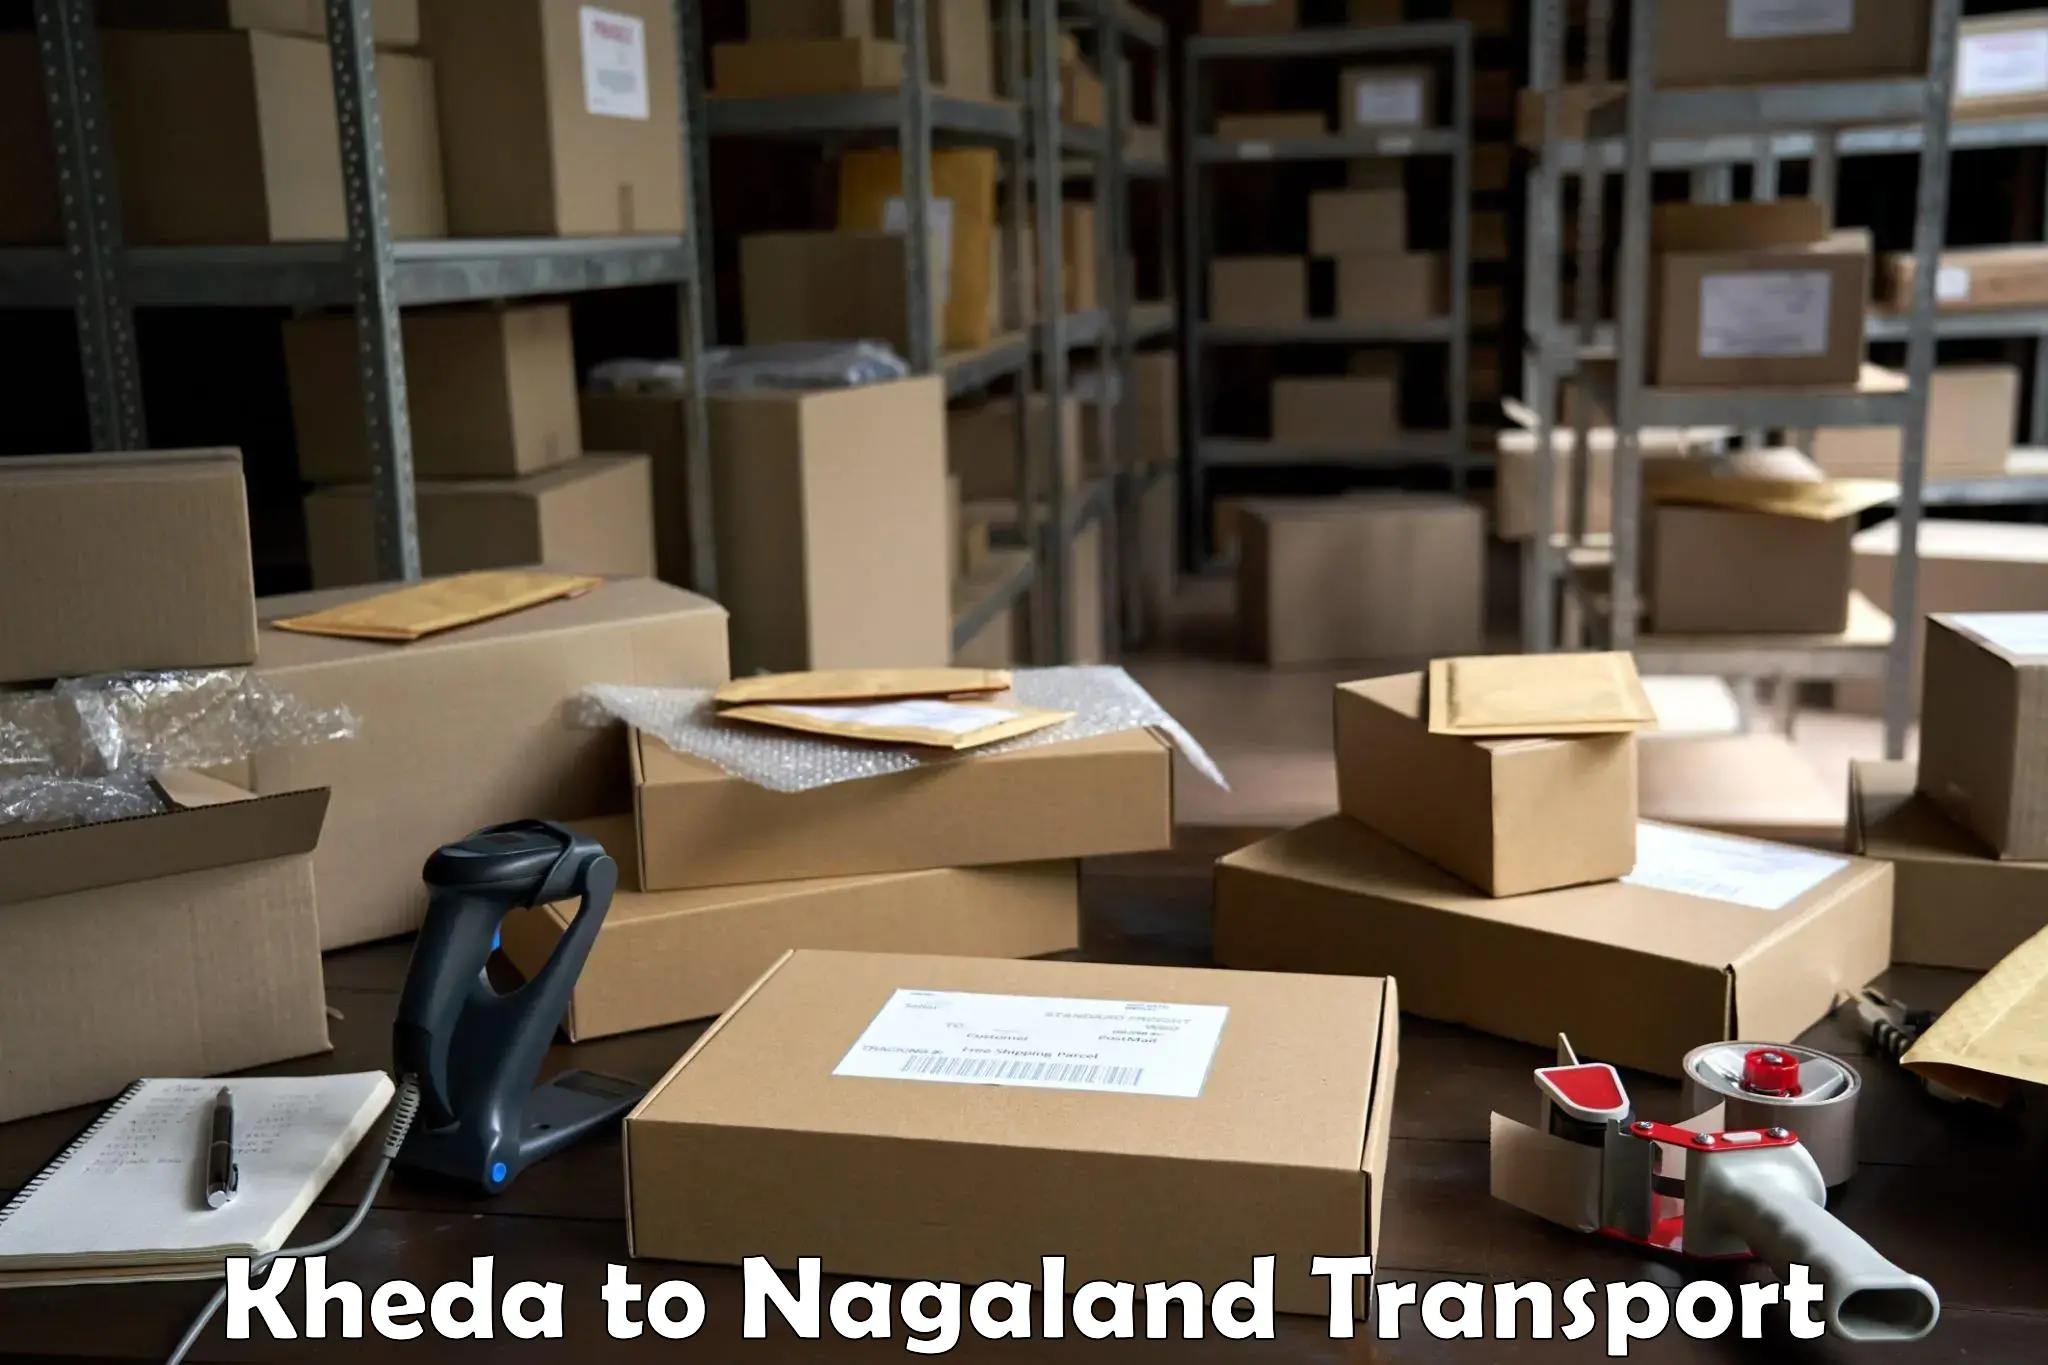 Furniture transport service Kheda to Nagaland